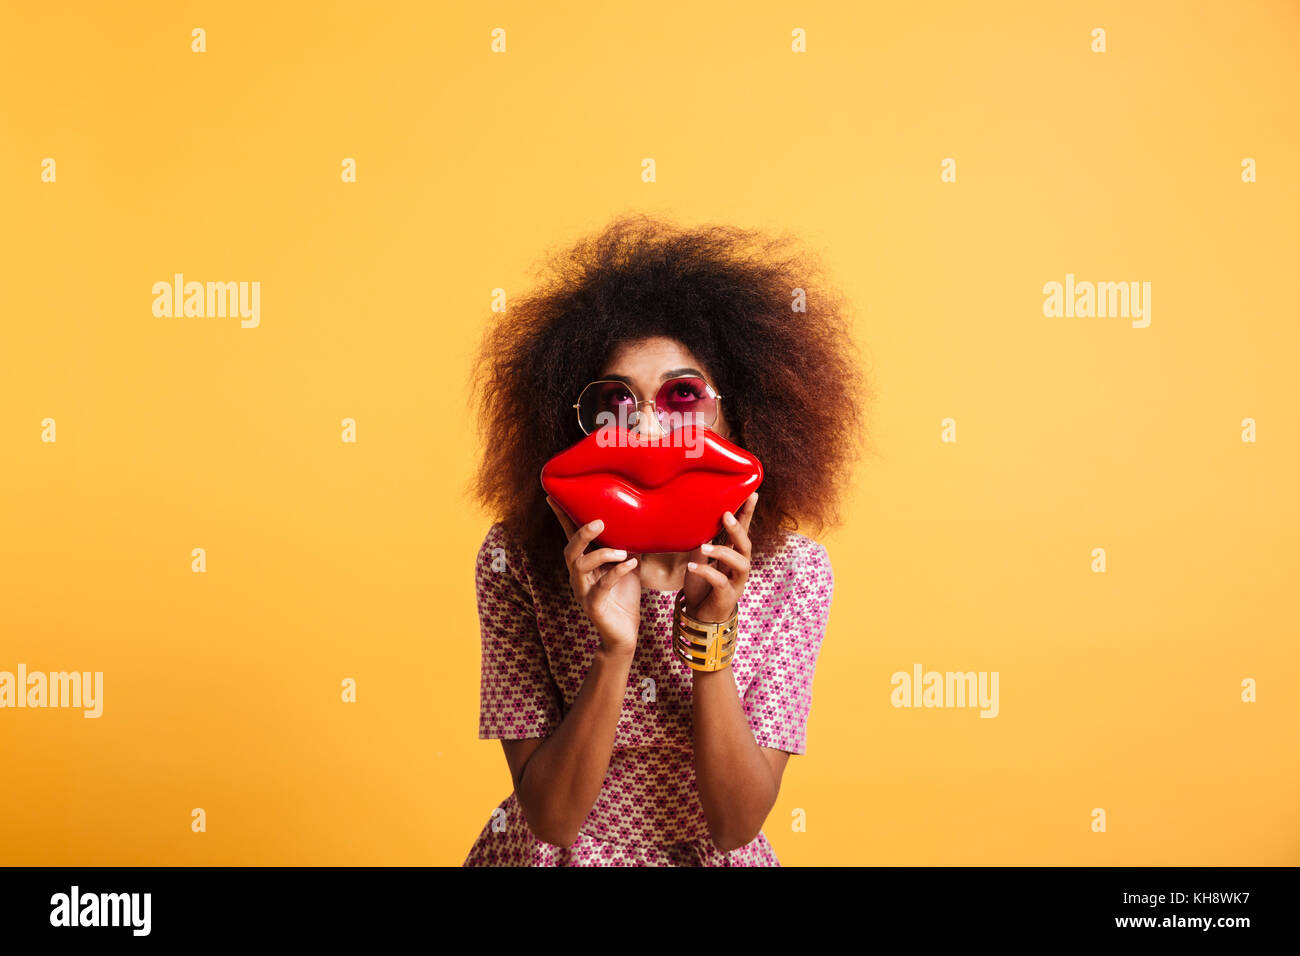 Assez élégant rétro femme africaine s'amuser tout en se posant avec de grandes lèvres rouge, à la recherche vers le haut, isolé sur fond jaune Banque D'Images